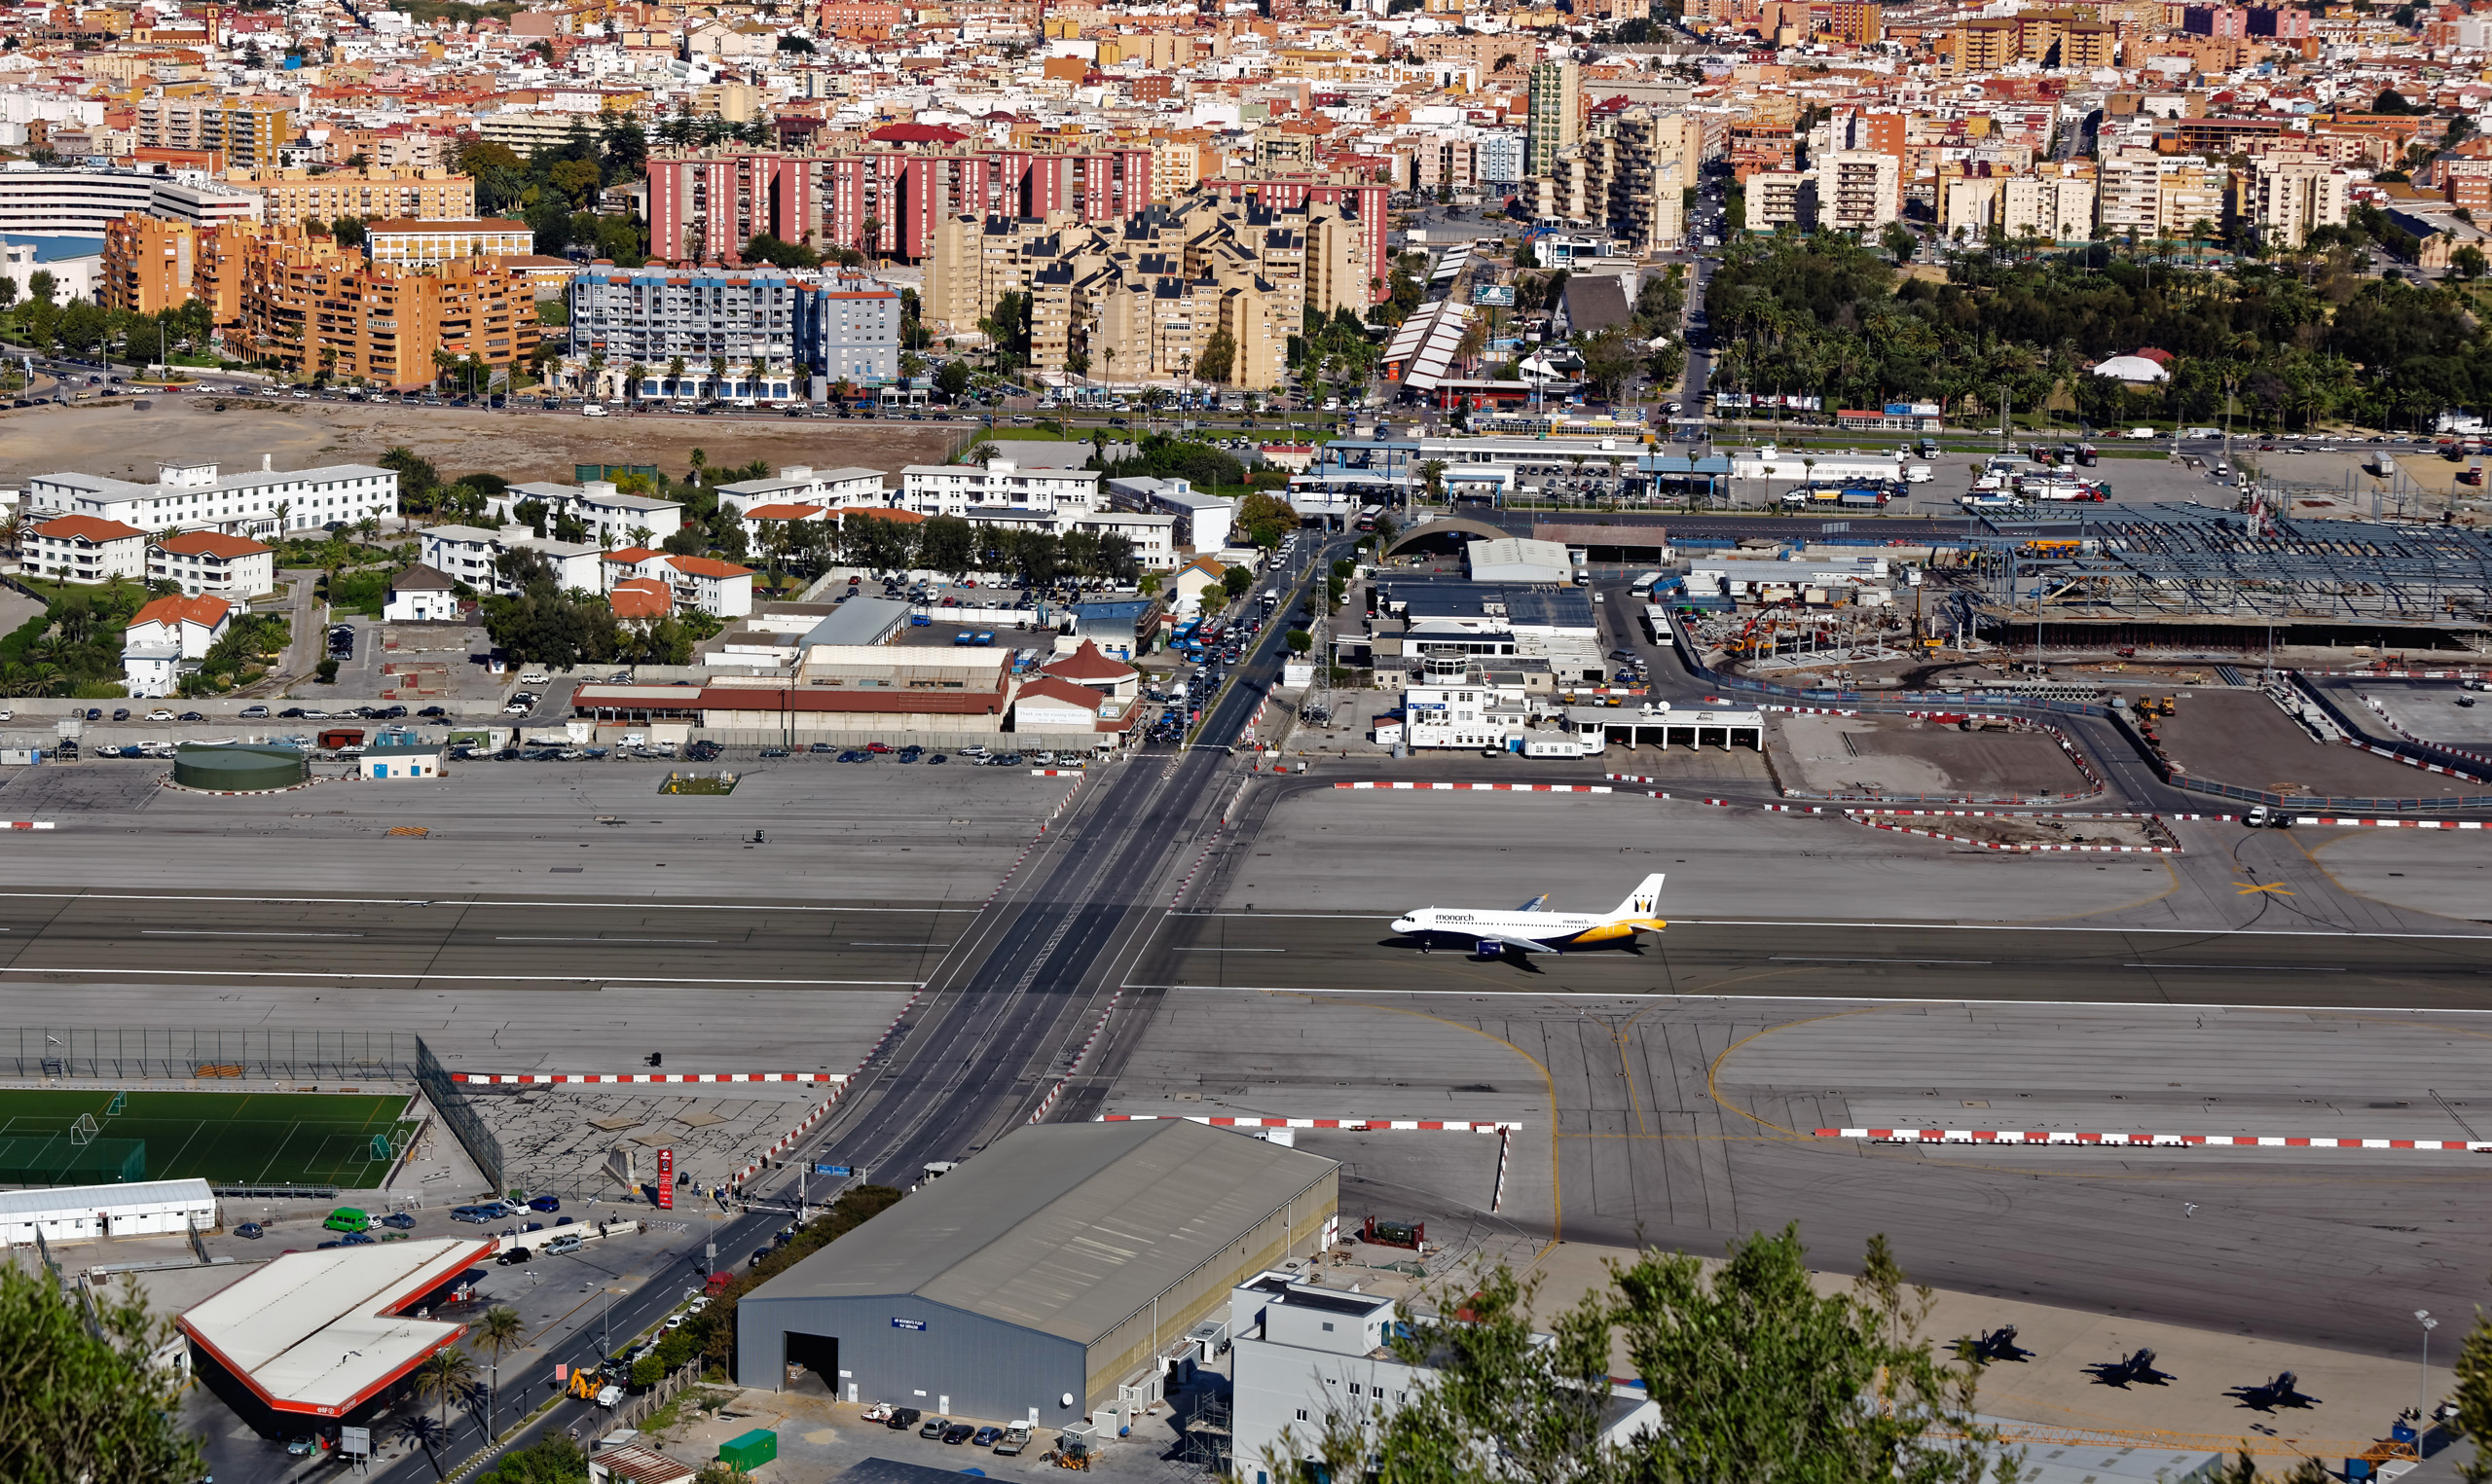 ザ・ロックから眺めるジブラルタル国際空港